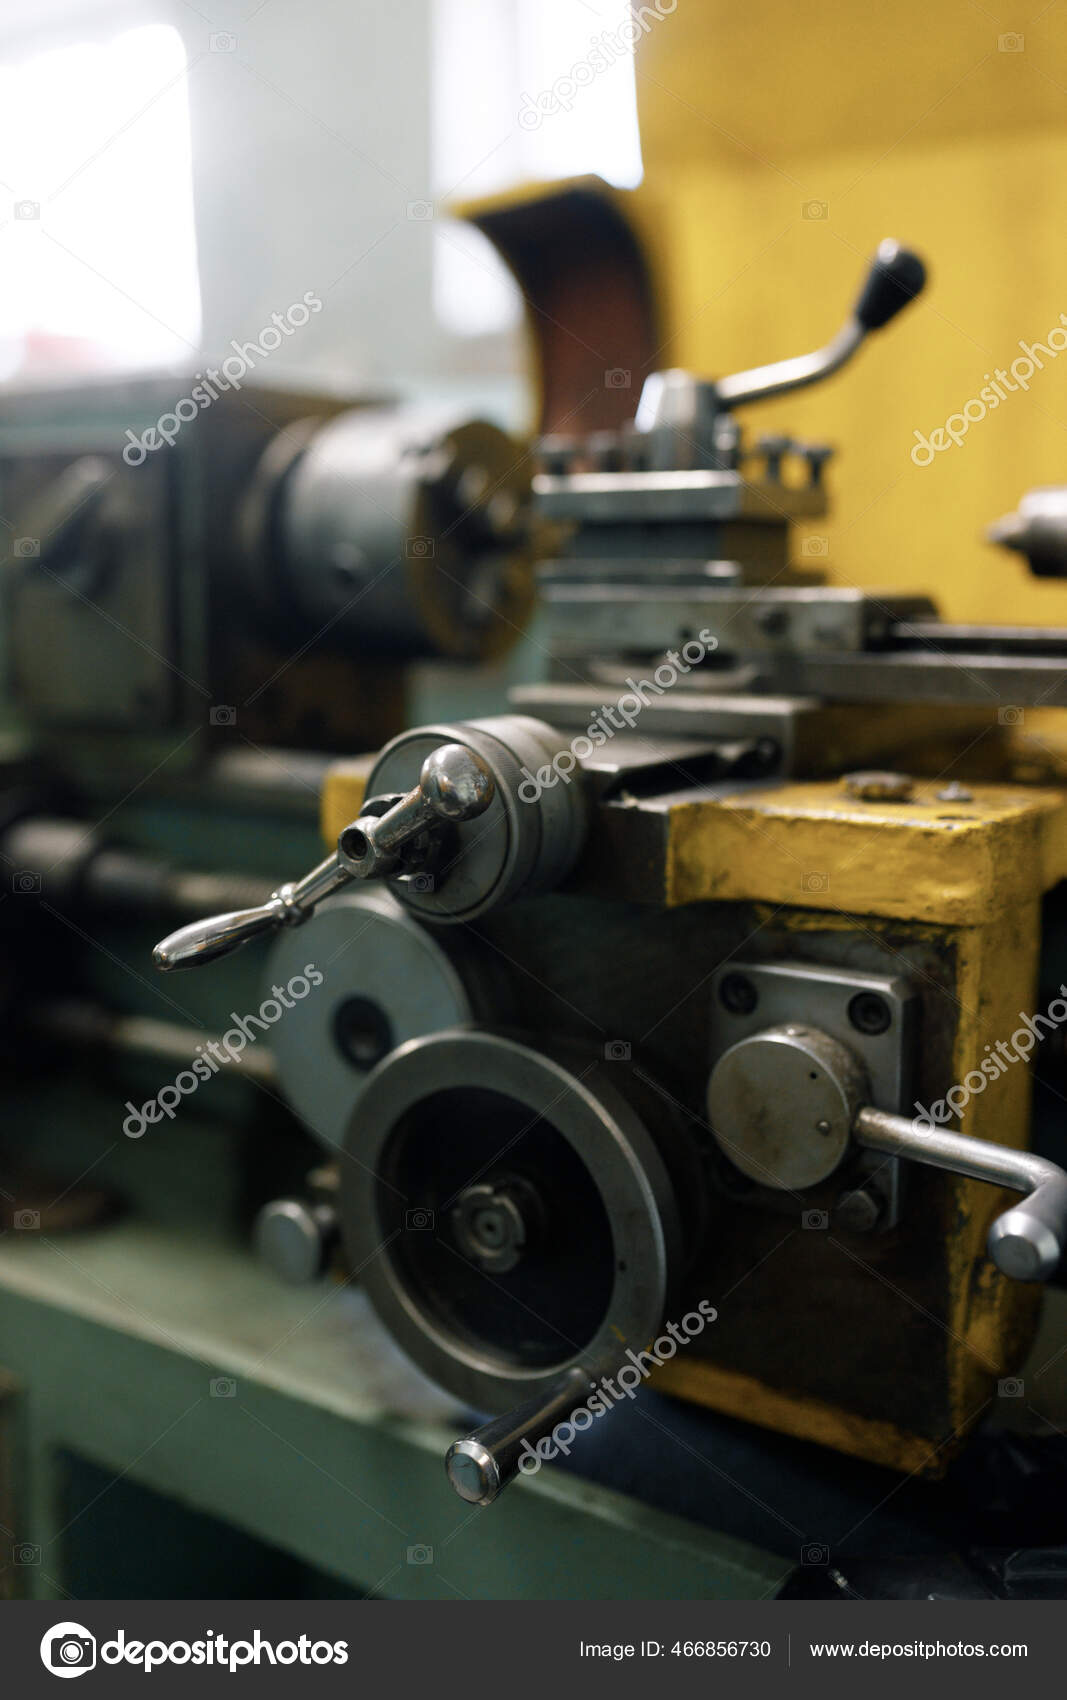 Torno de cerrajero viejo, componentes y herramientas. Torno de primer  plano, metal con un fondo borroso.: fotografía de stock © pavelvozmischev  #466856730